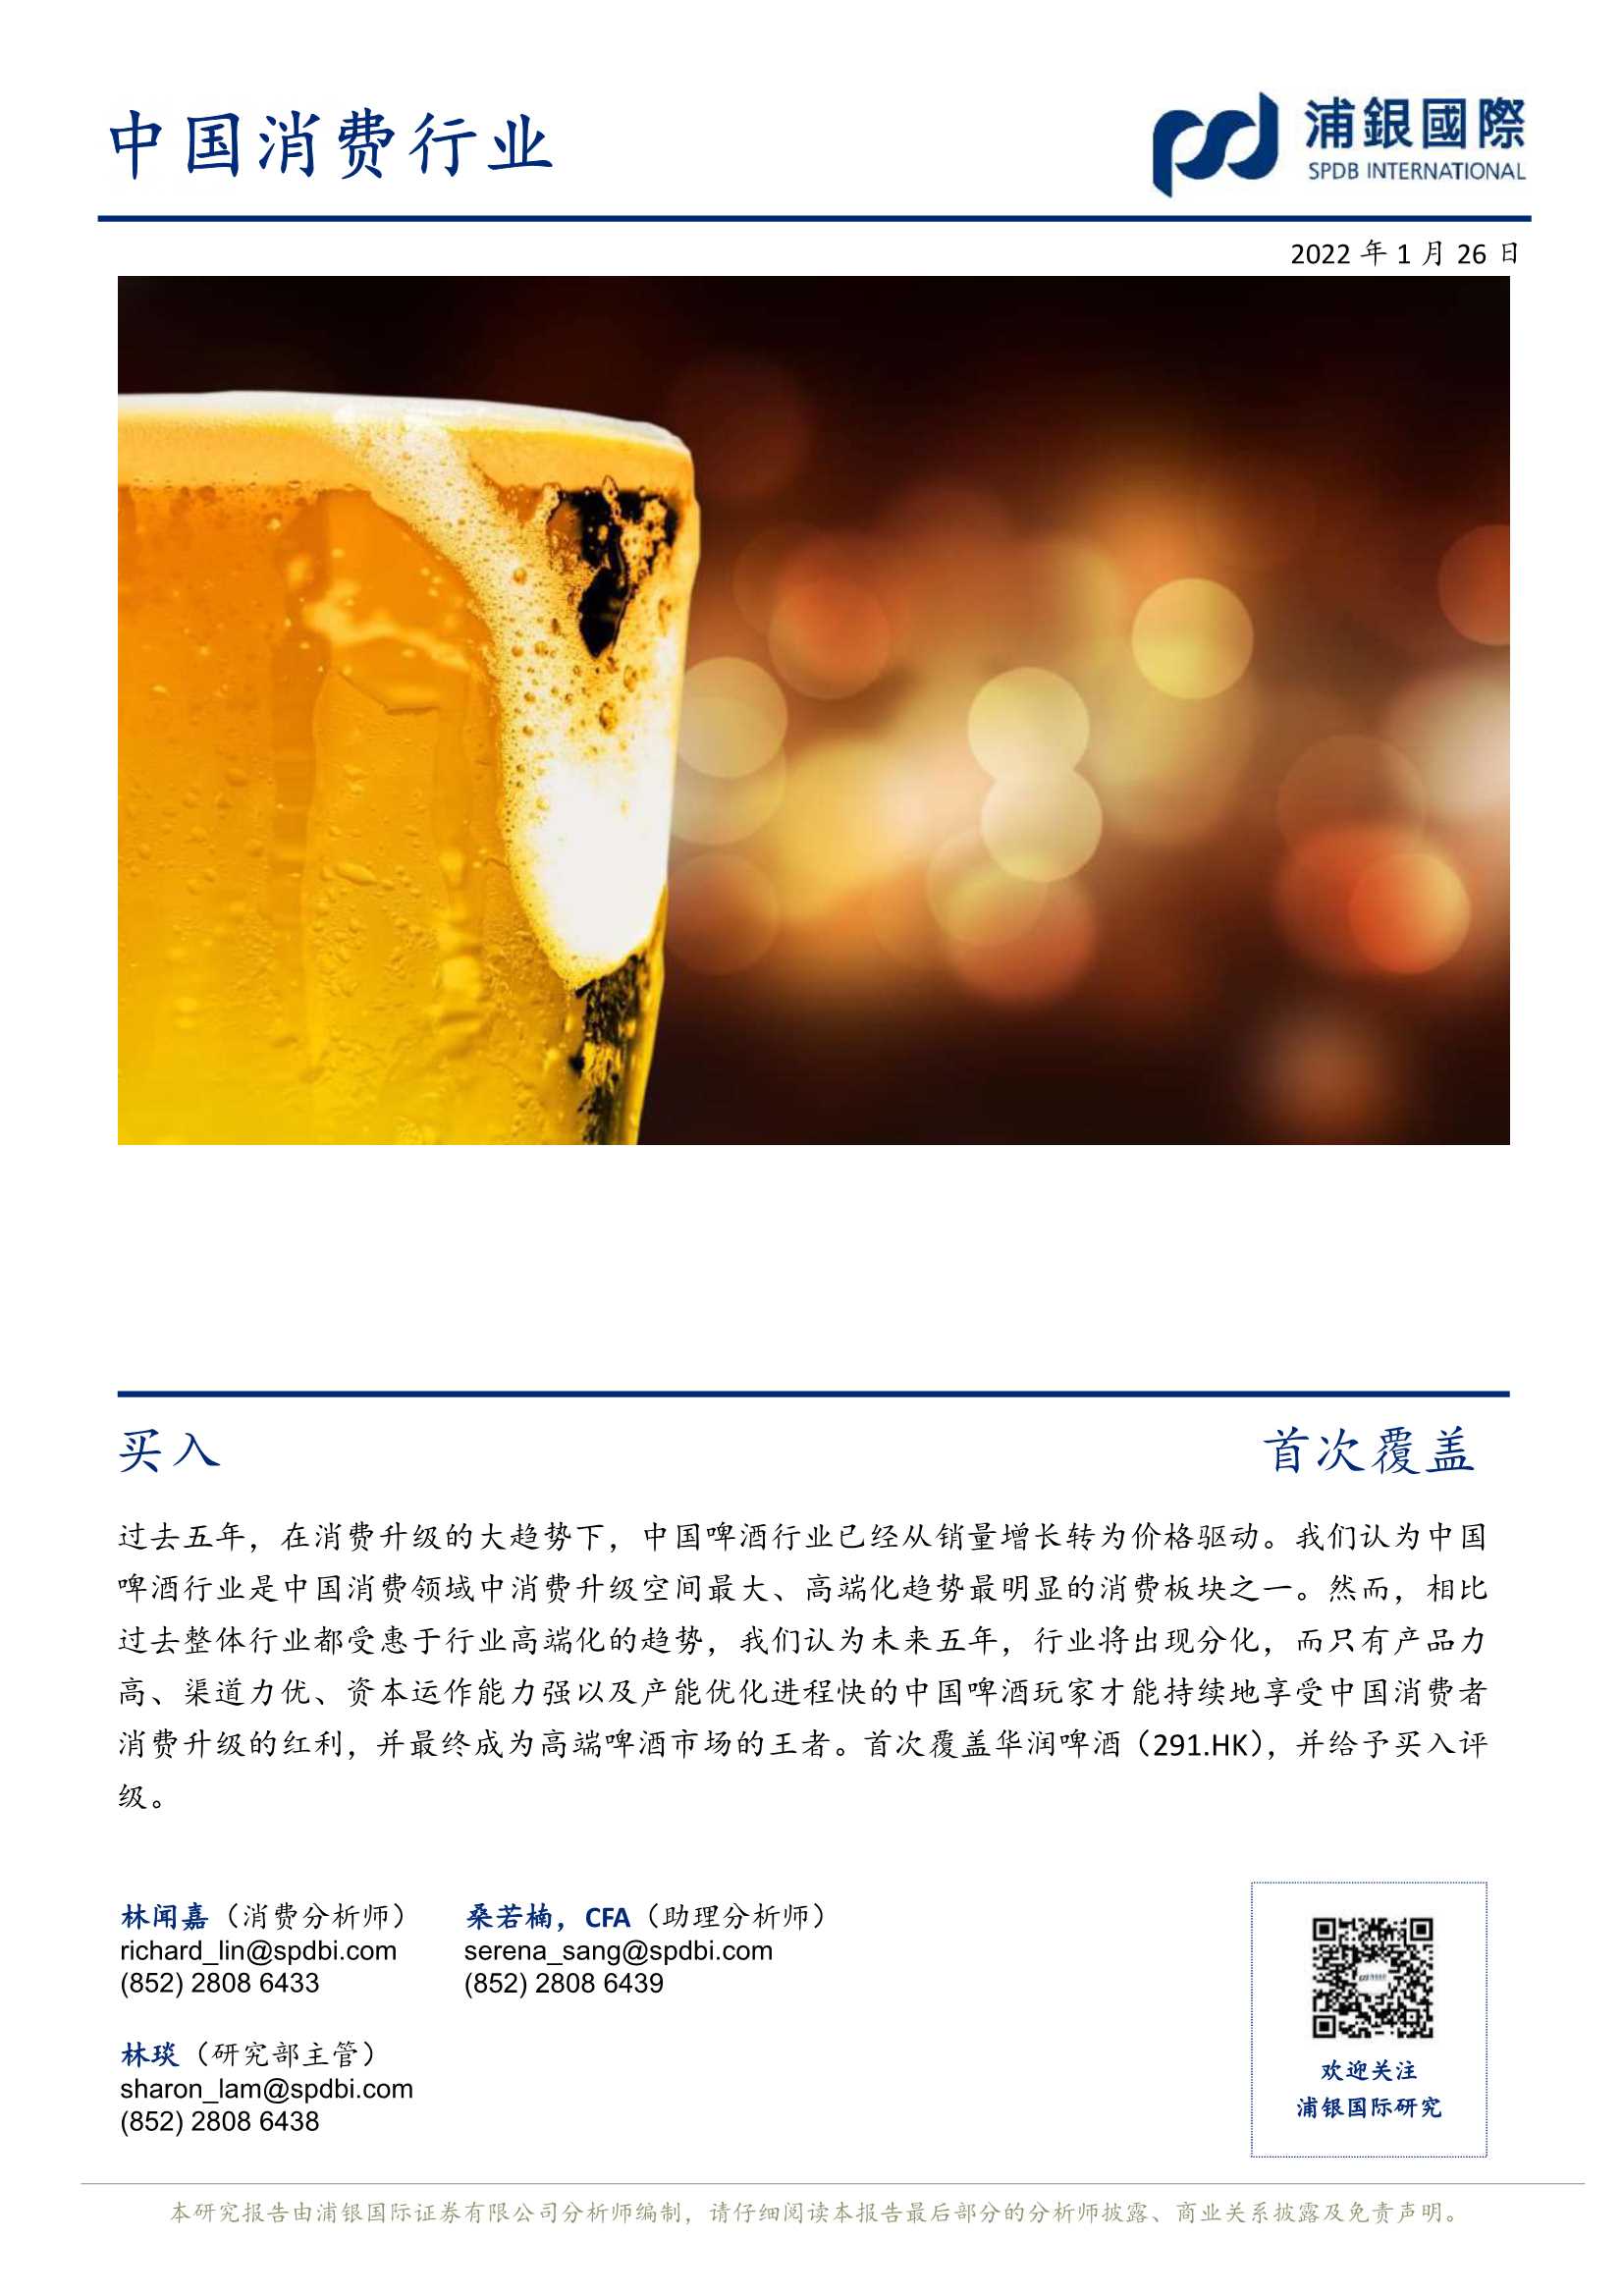 浦银国际-华润啤酒-0291.HK-强大的资本运作成就王者霸业-20220126-33页